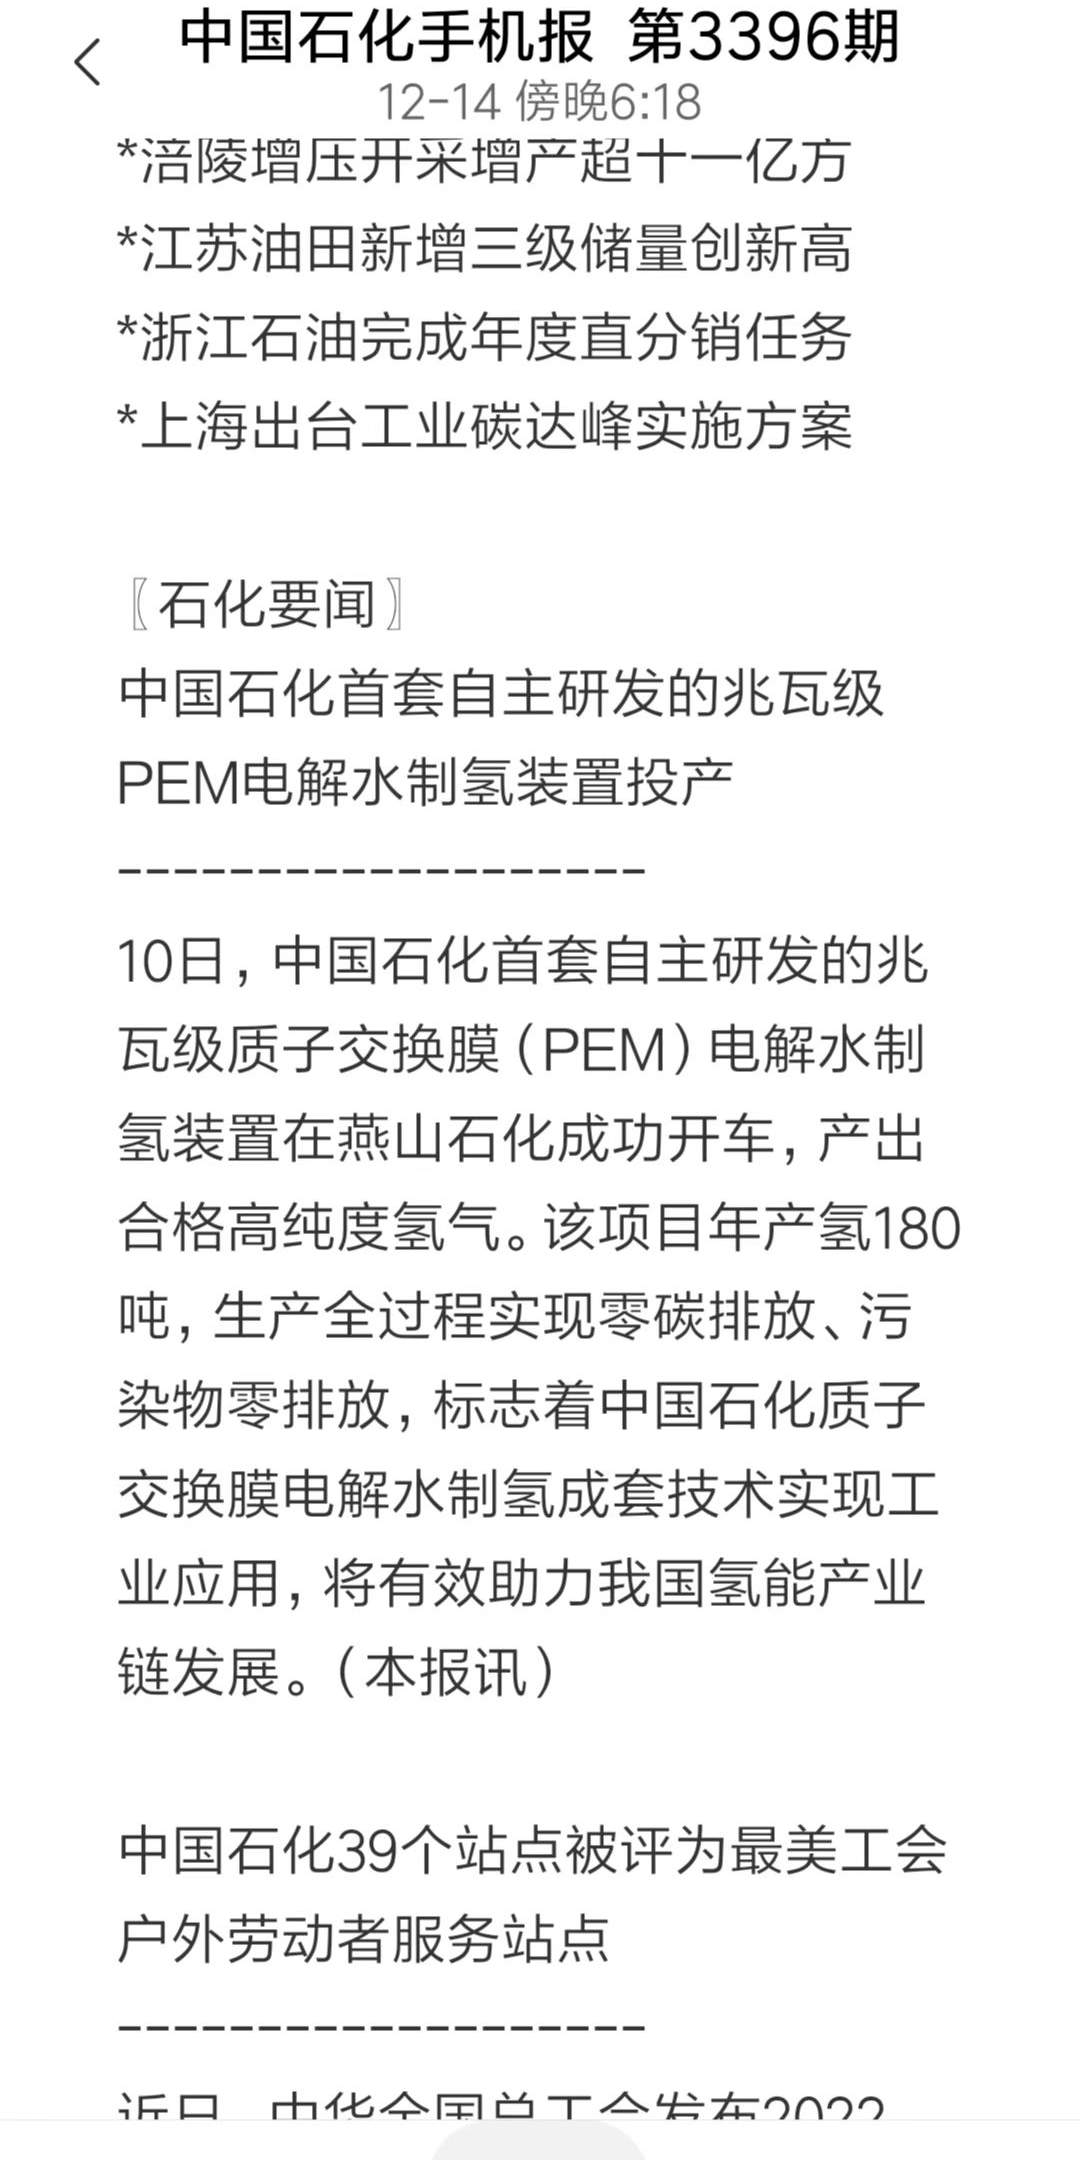 燕山石化“PEM”成为媒体关注焦点